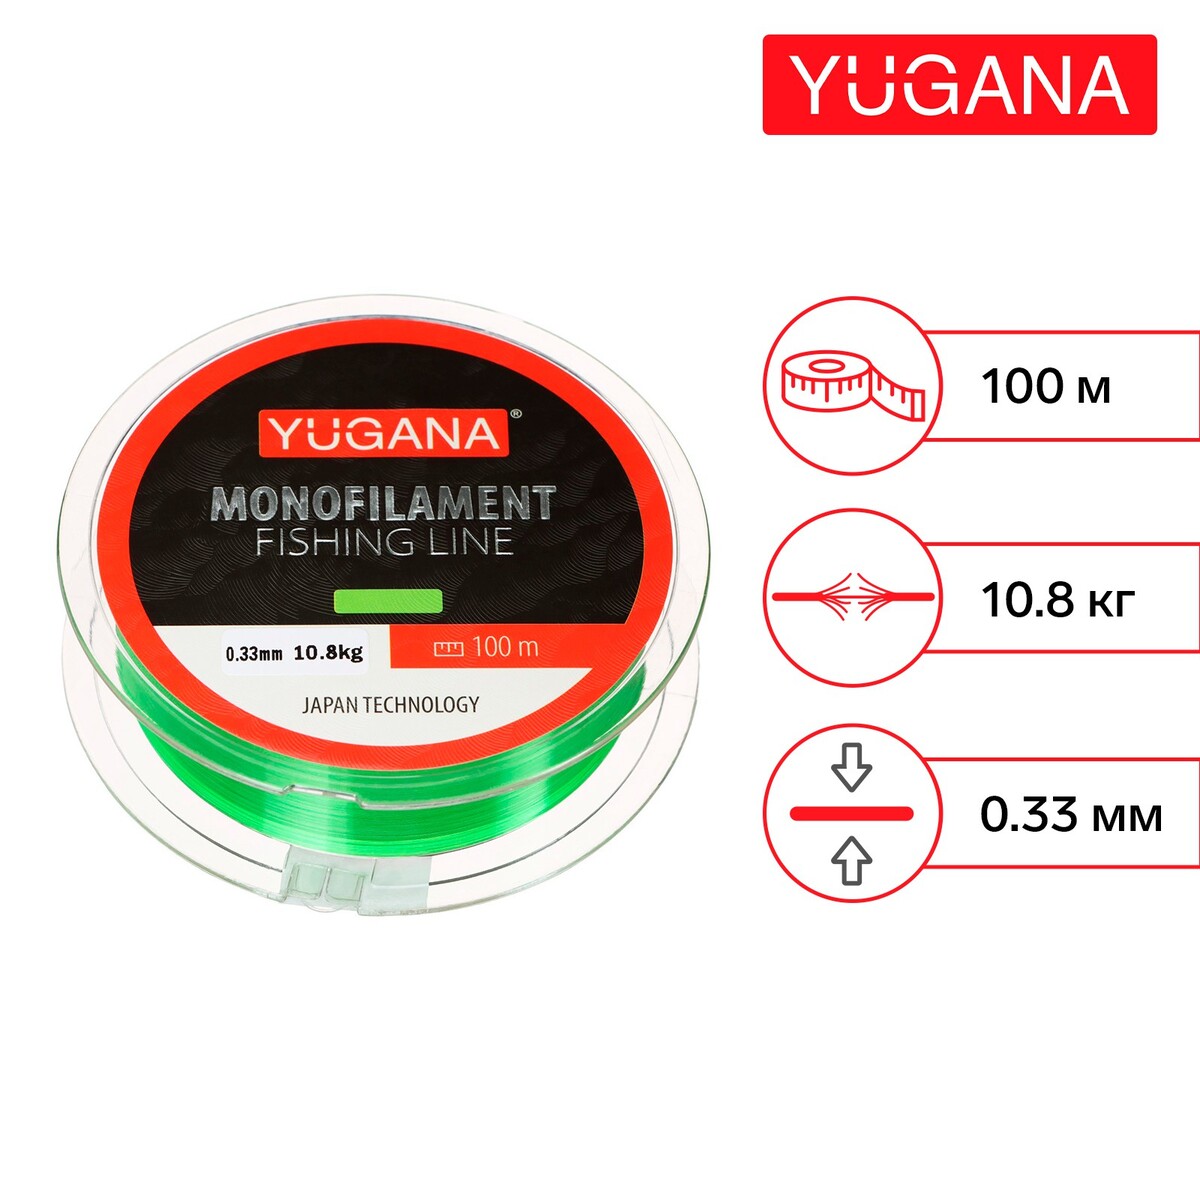 Леска монофильная yugana, диаметр 0.33 мм, тест 10.8 кг, 100 м, зеленая